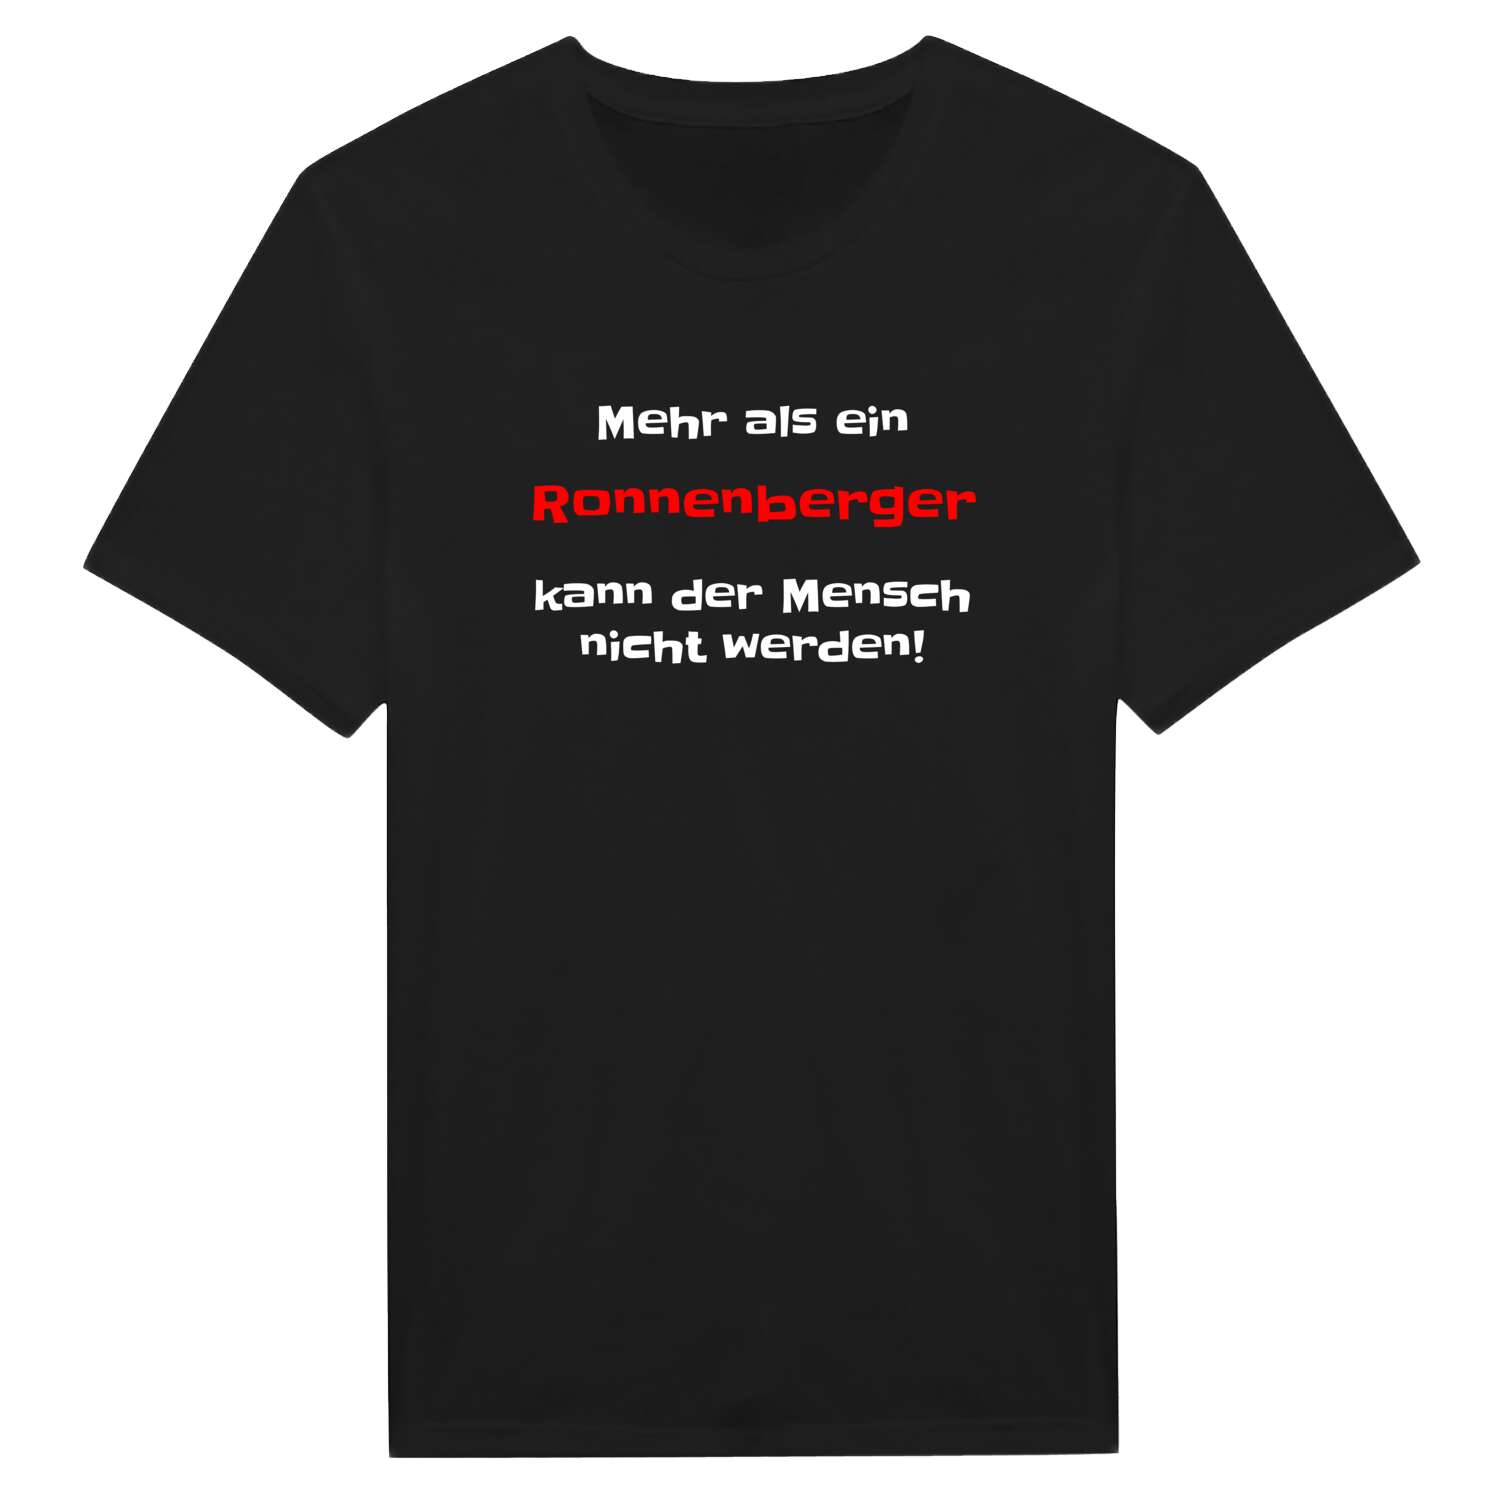 Ronnenberg T-Shirt »Mehr als ein«